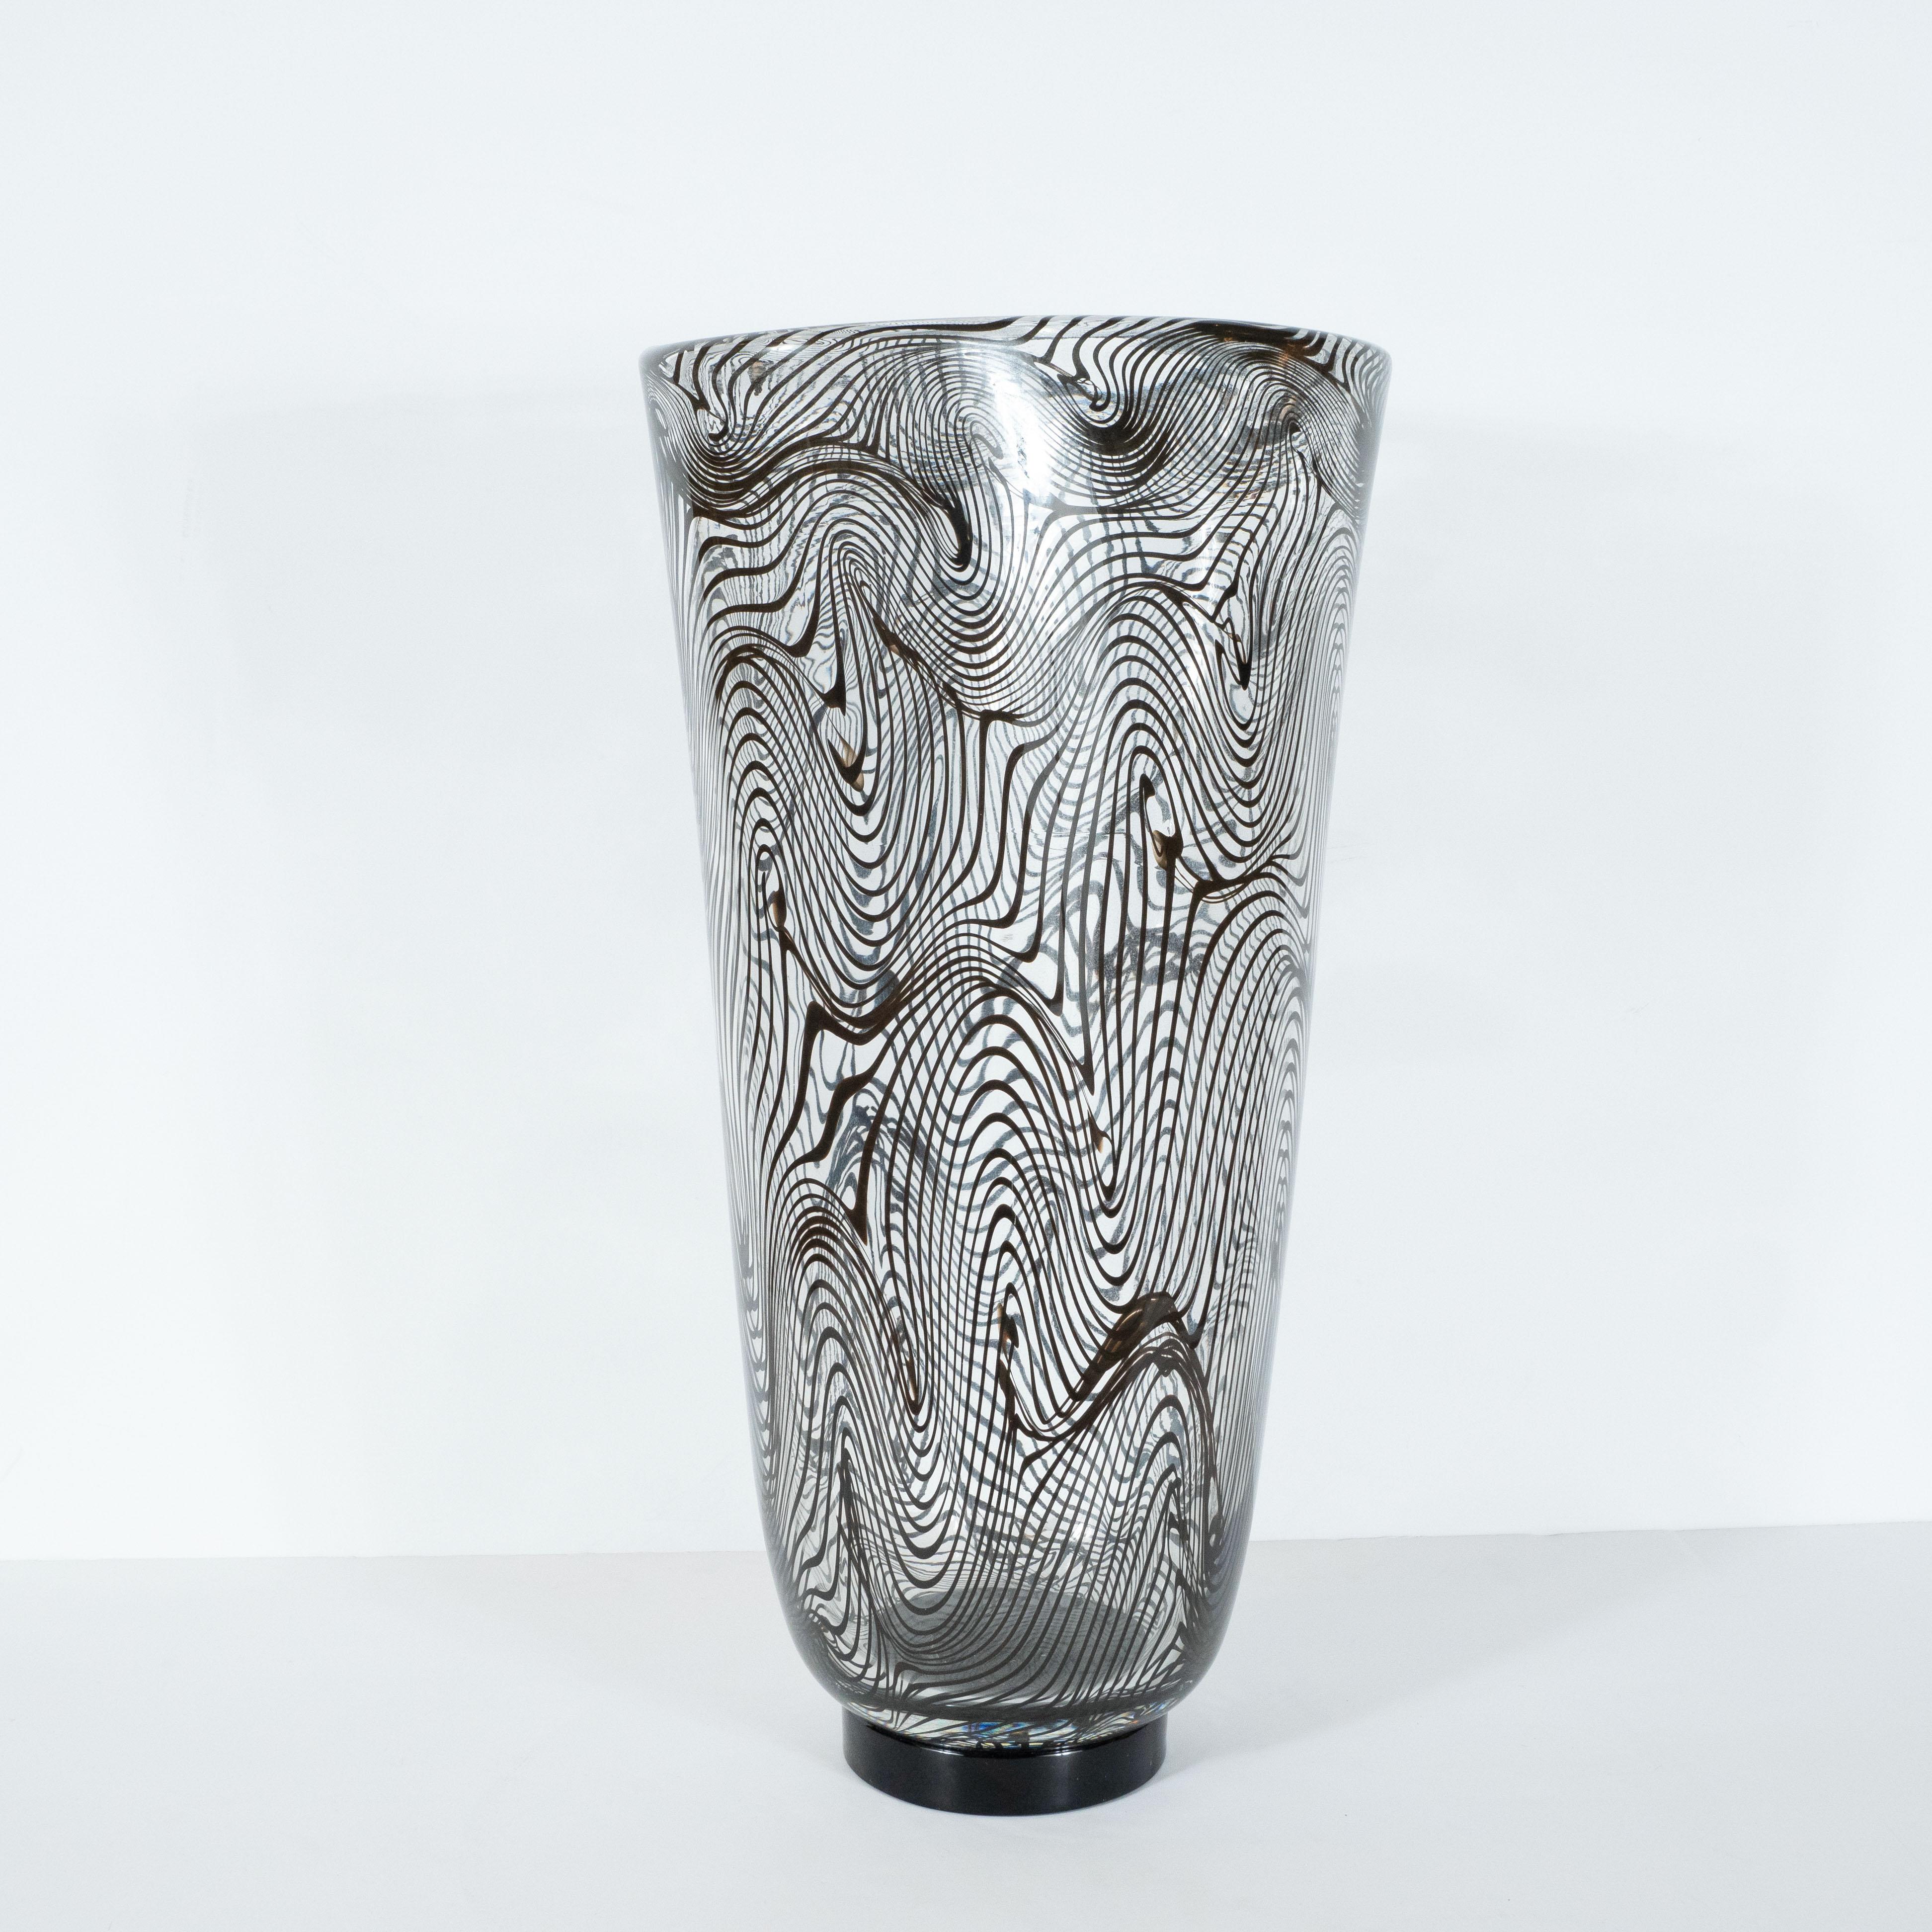 Murano Glass Modernist Hand Blown Murano Translucent Vase with Organic Black Swirl Detailing